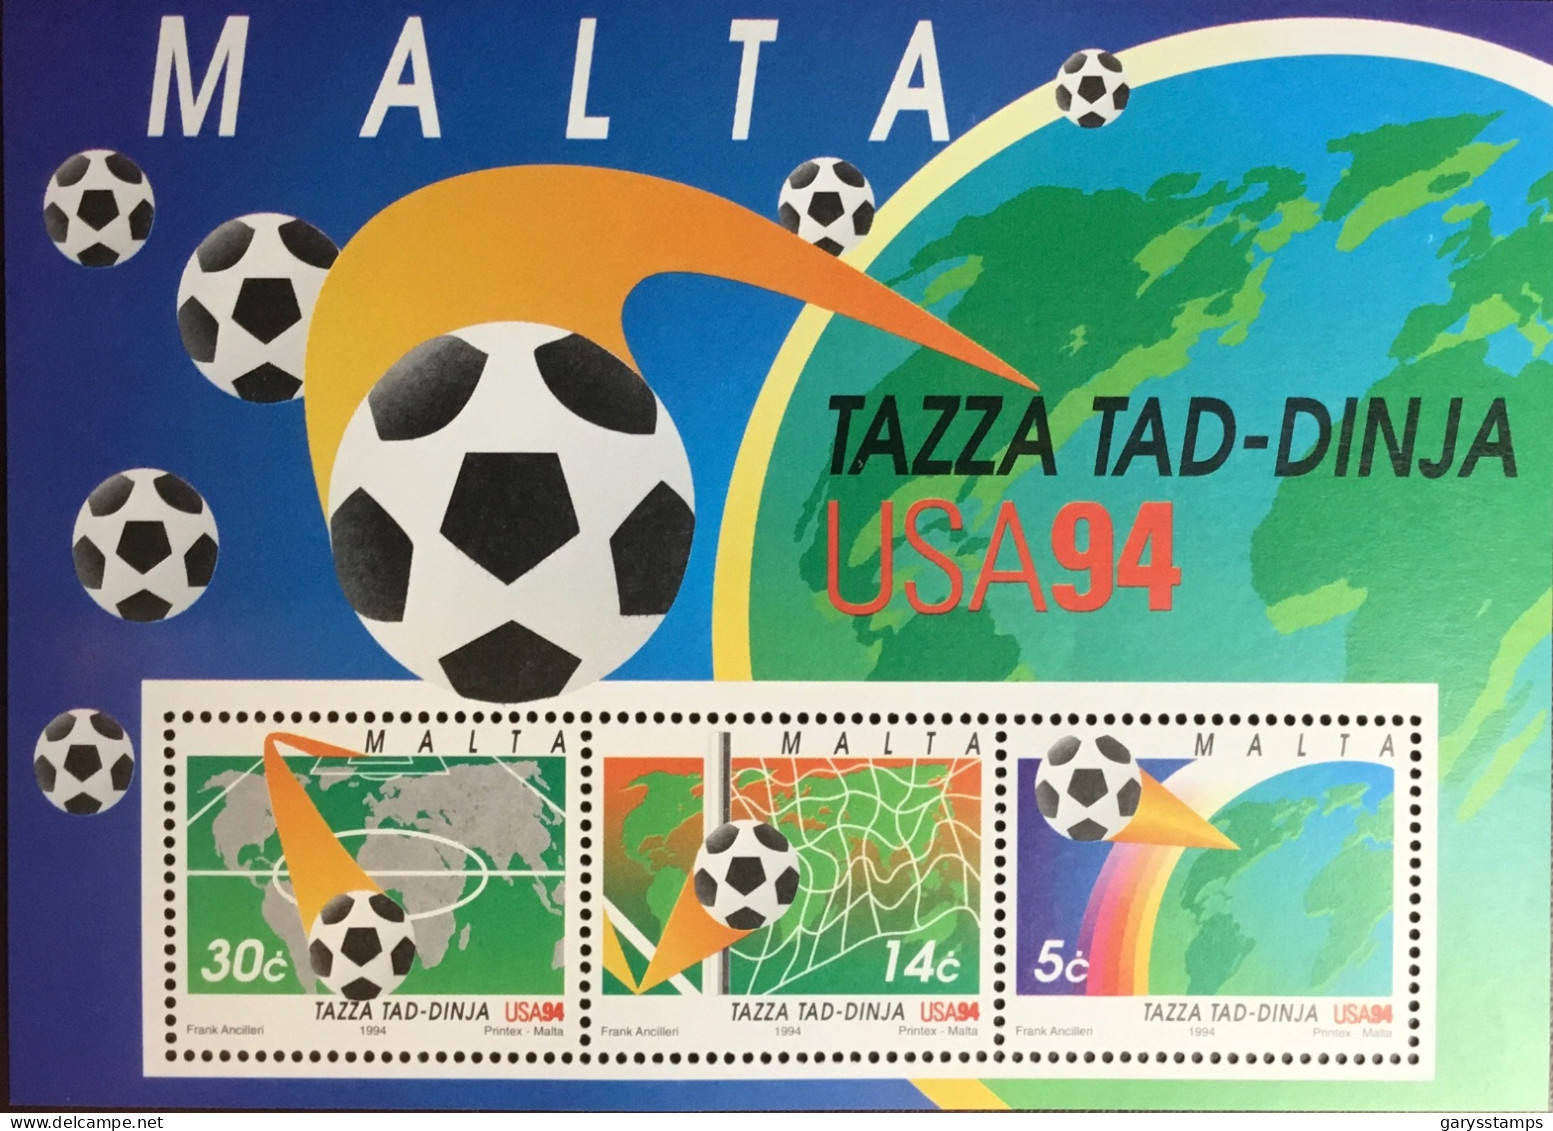 Malta 1994 World Cup Minisheet MNH - Malta